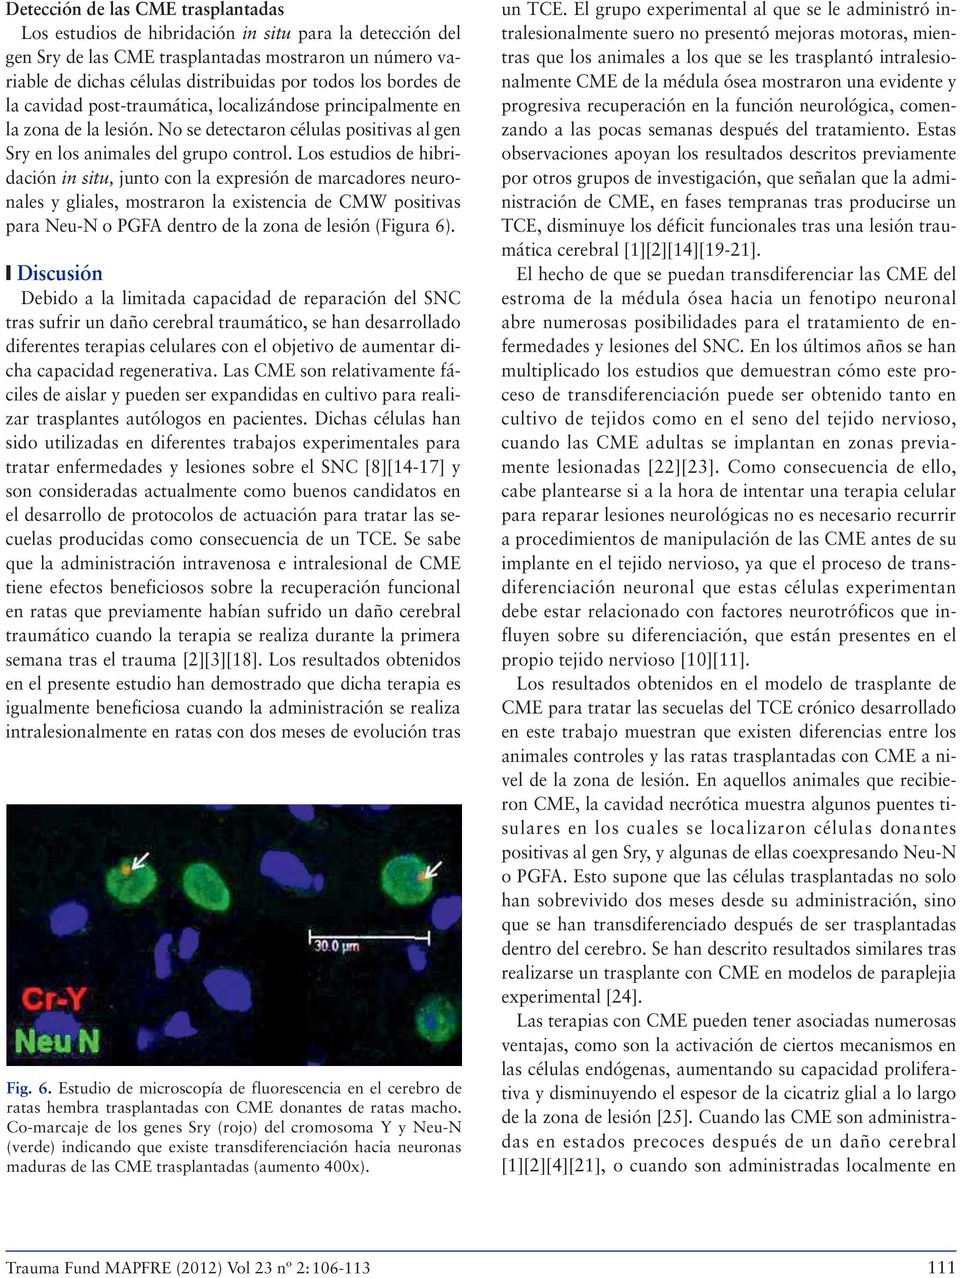 Los estudios de hibridación in situ, junto con la expresión de marcadores neuronales y gliales, mostraron la existencia de CMW positivas para Neu-N o PGFA dentro de la zona de lesión (Figura 6).